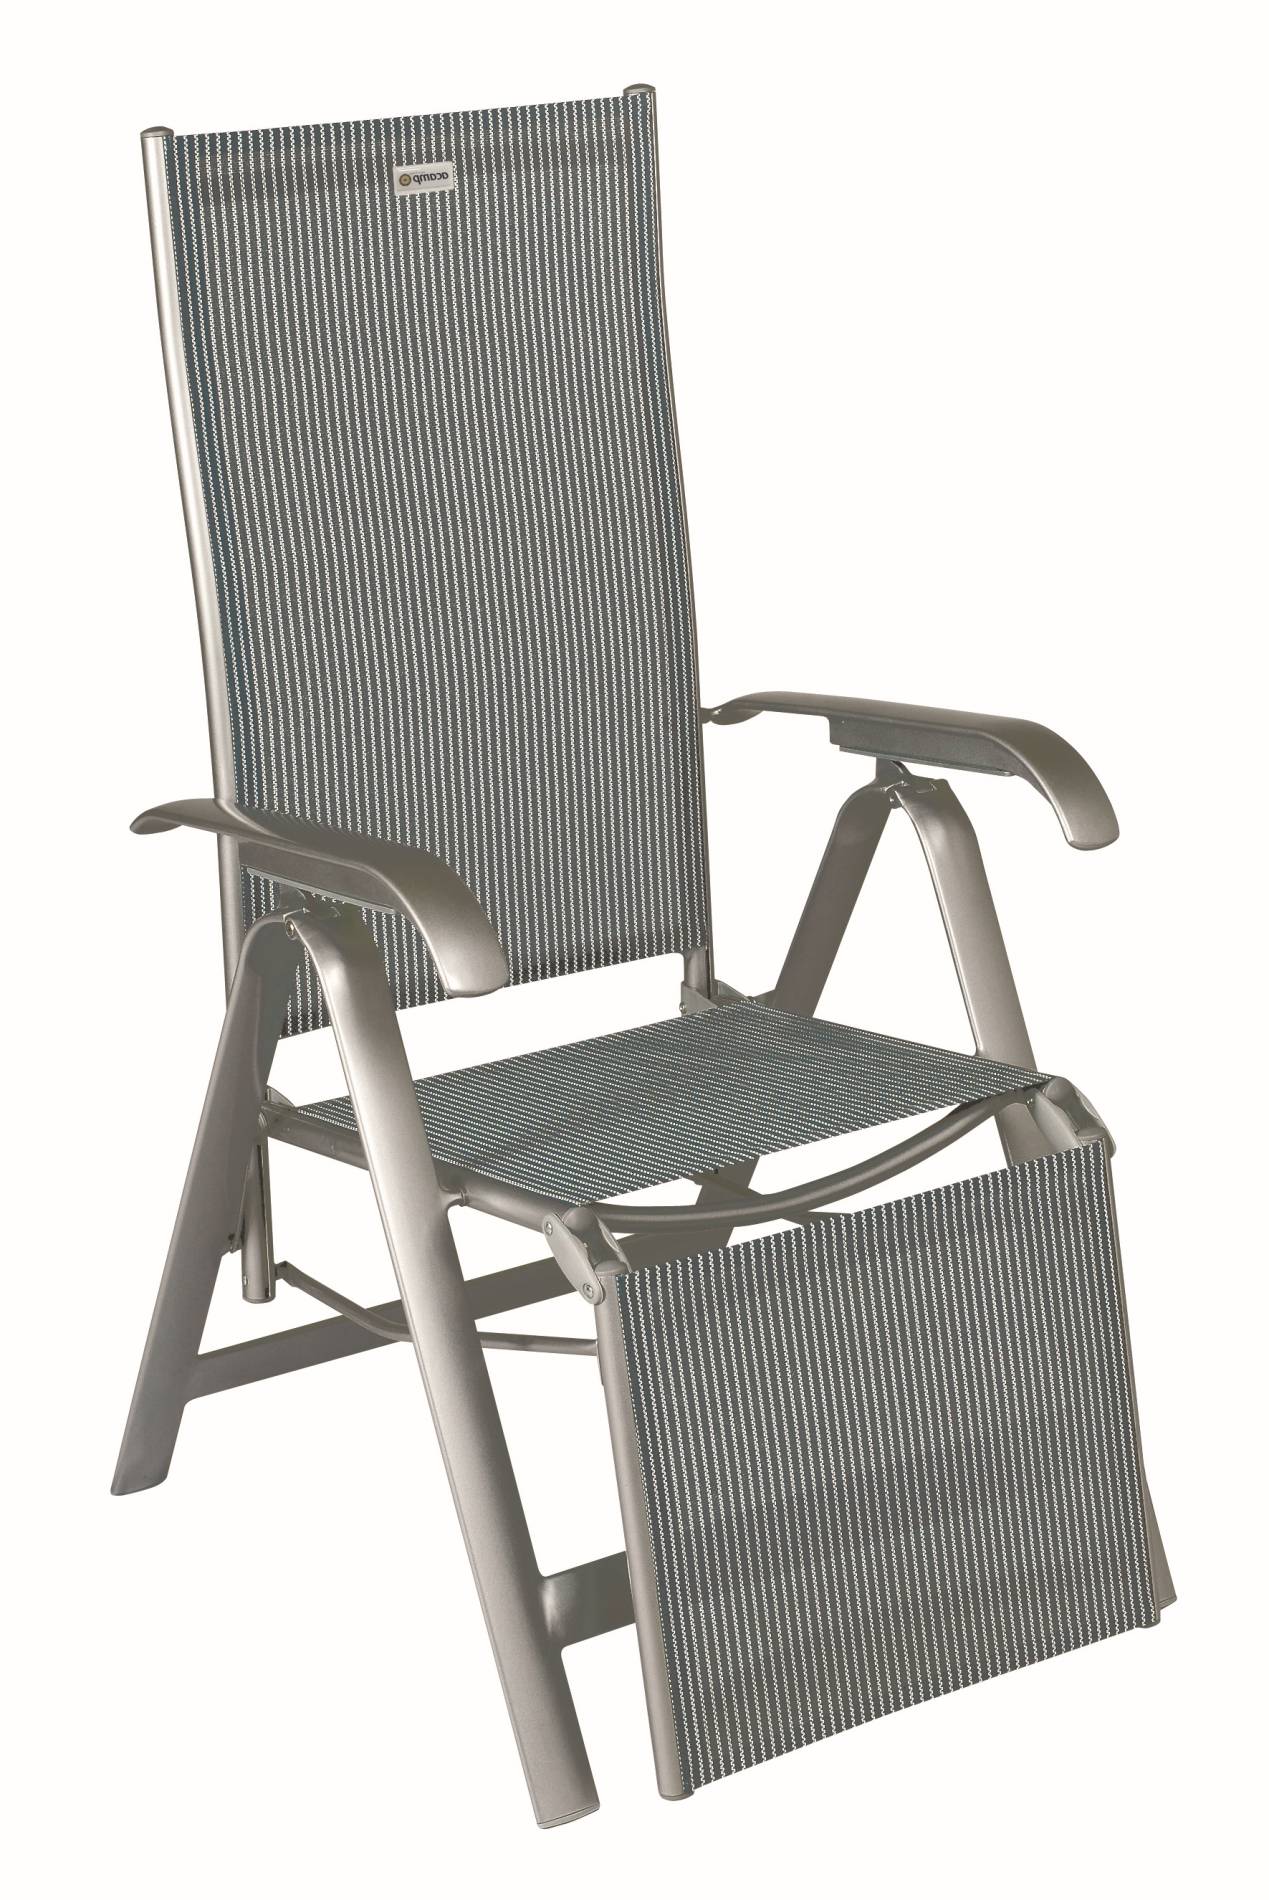 Platina szinü acamp lábvégkupak Acatop magastámlás rakatolható székhez 55x15mm 4 db-os készlet